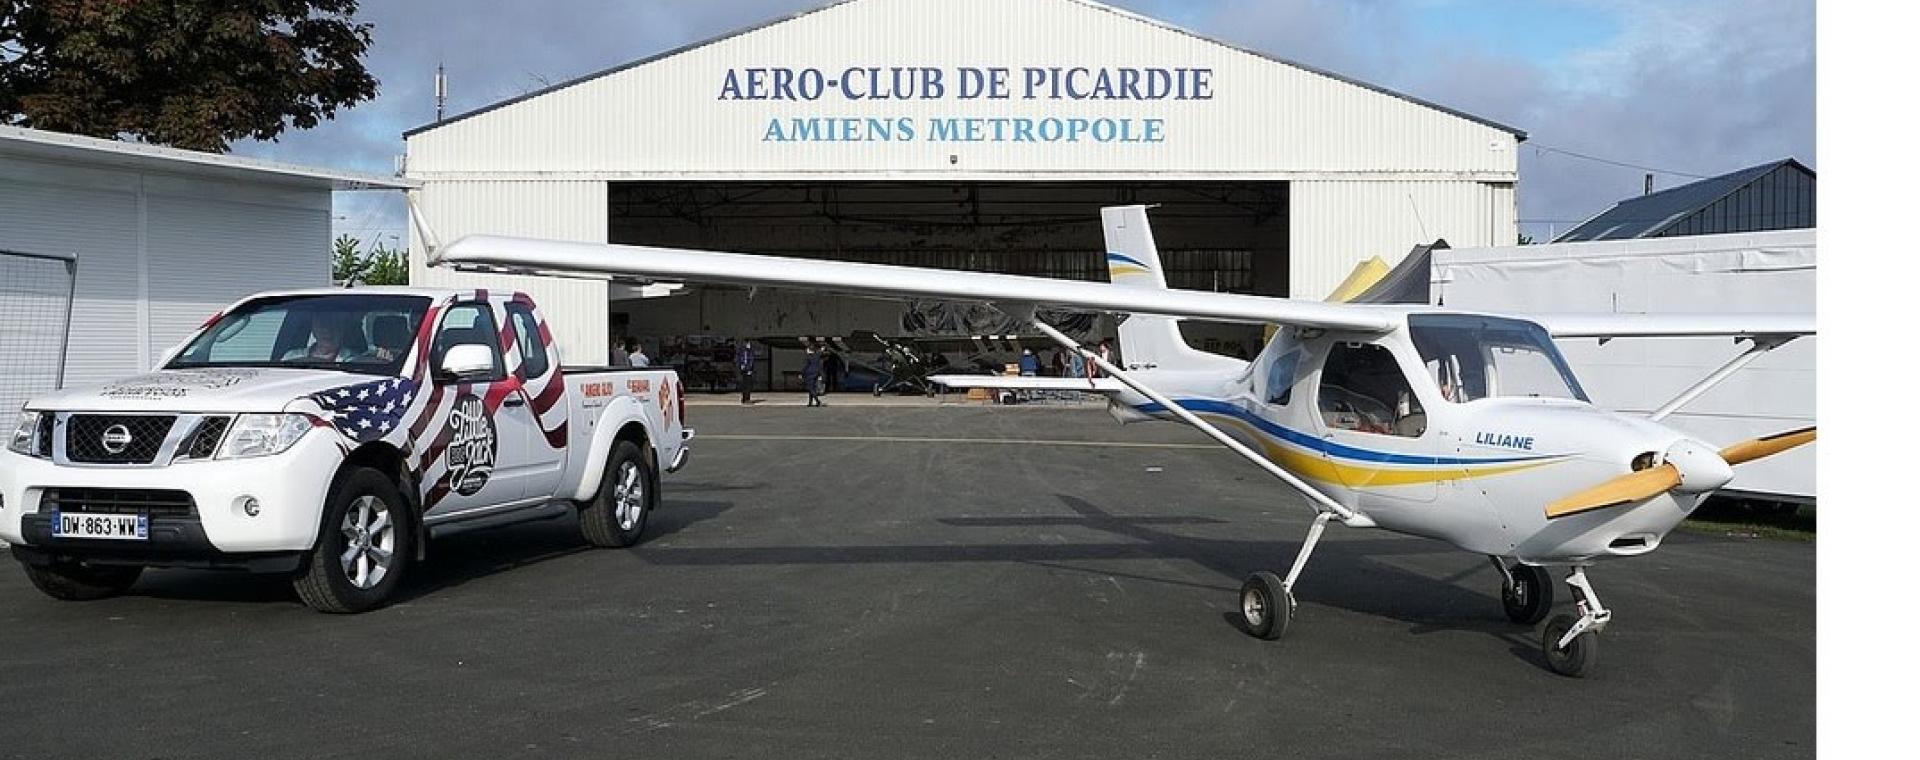 Photo du hangar de l'aéroclub de Picardie à Glisy. Un avion et une voiture sont stationnés en extérieur.